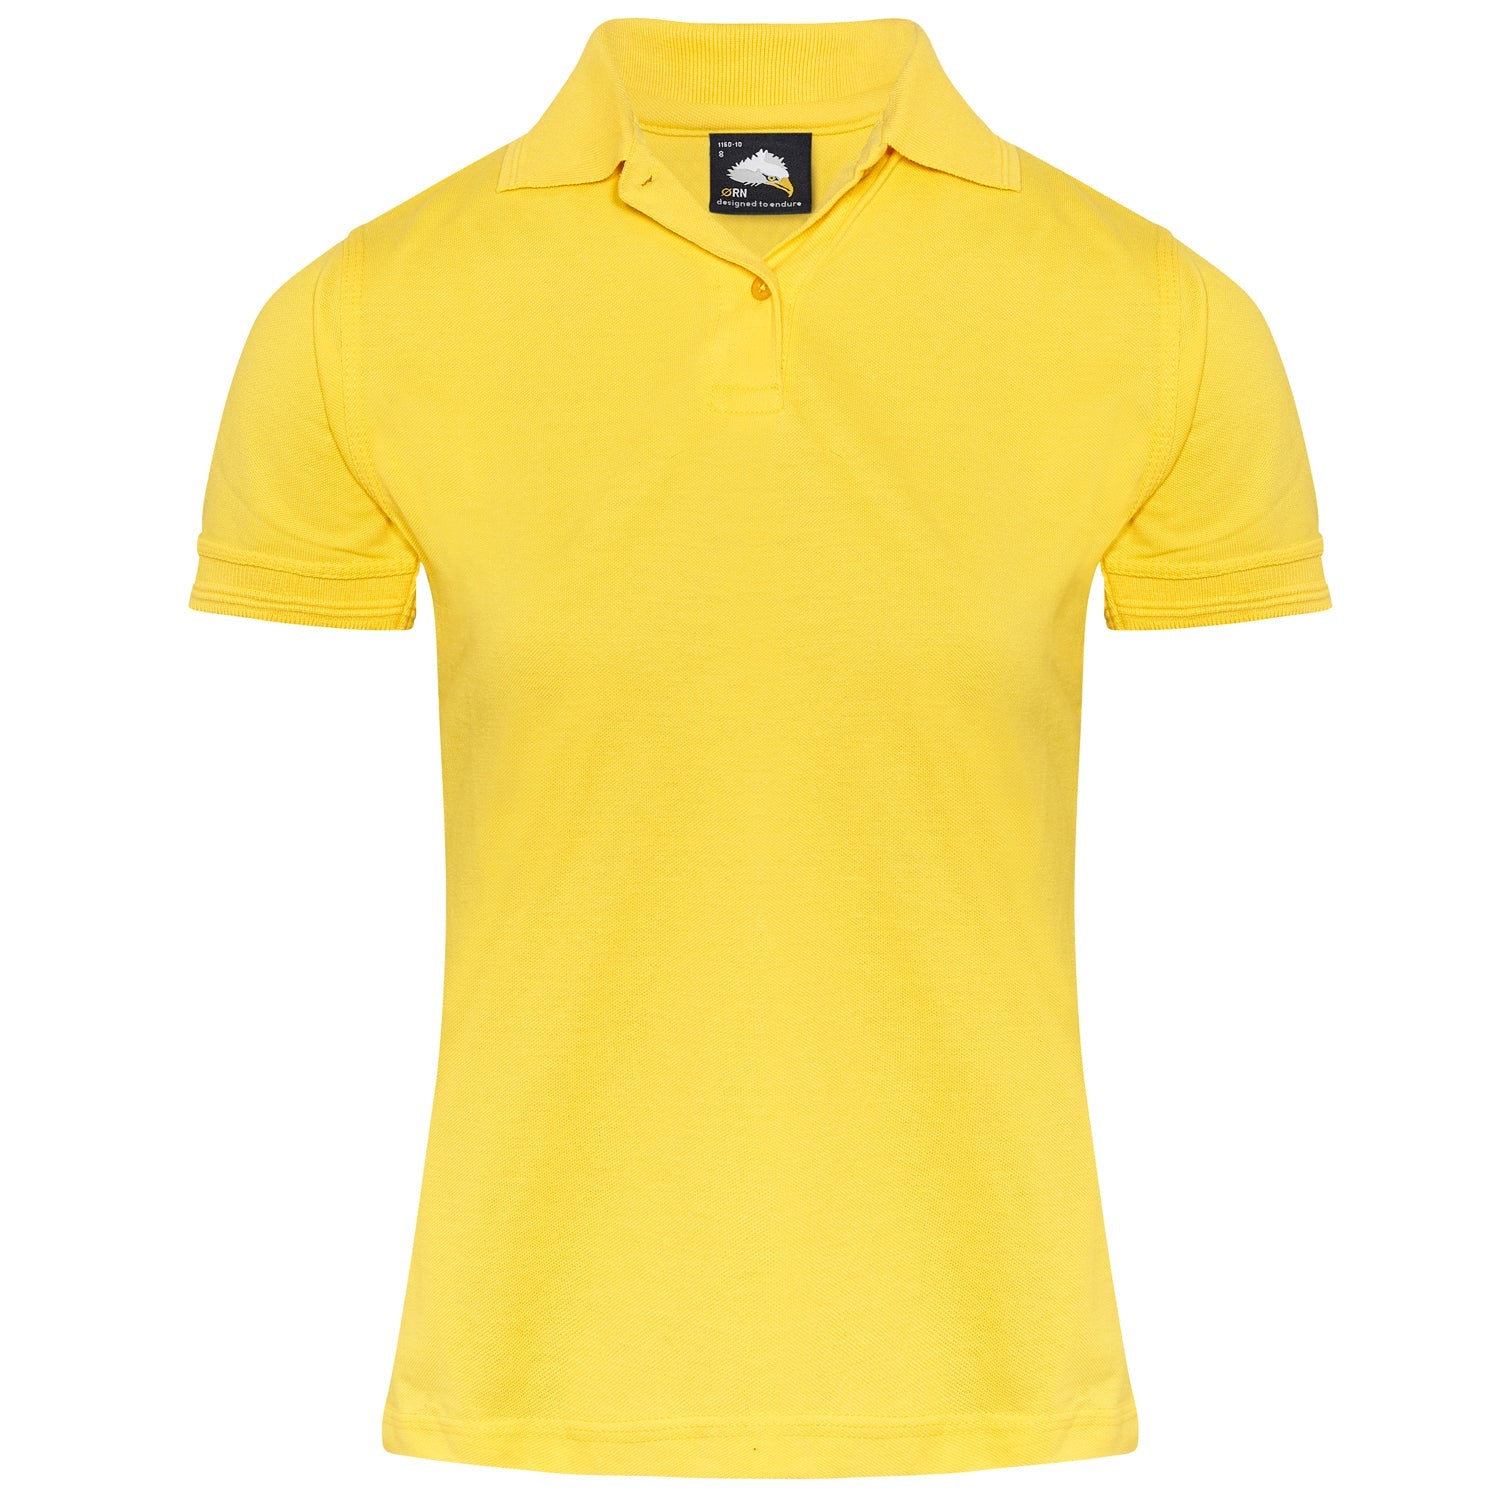 ORN Wren Ladies Poloshirt - Yellow